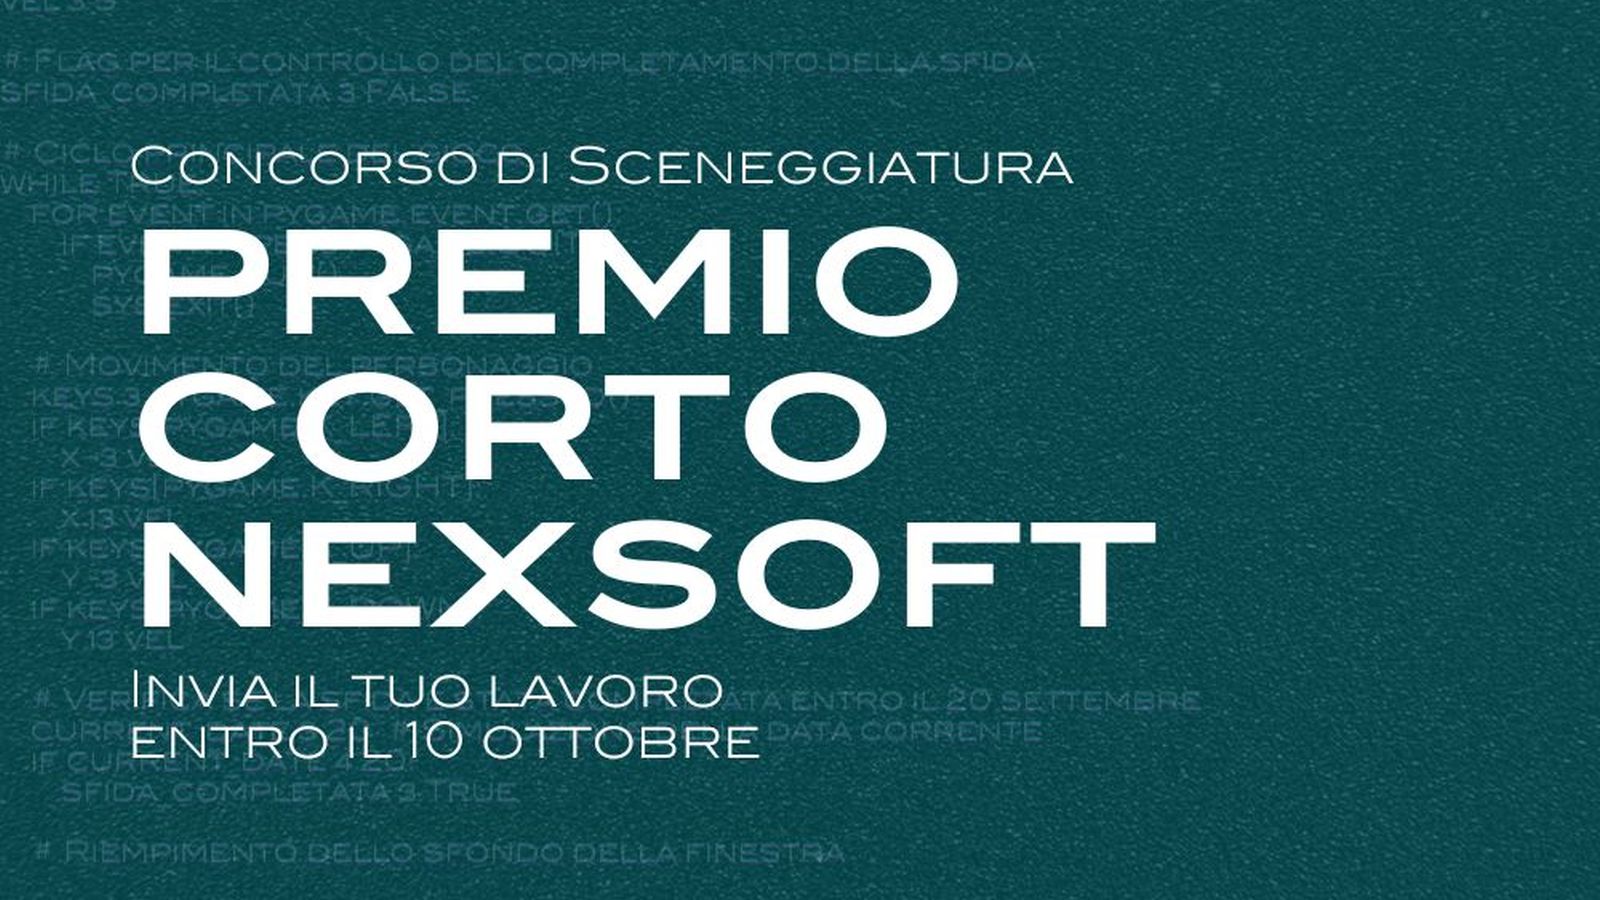 Premio corto Nextsoft, concorso per sceneggiature di cortometraggi